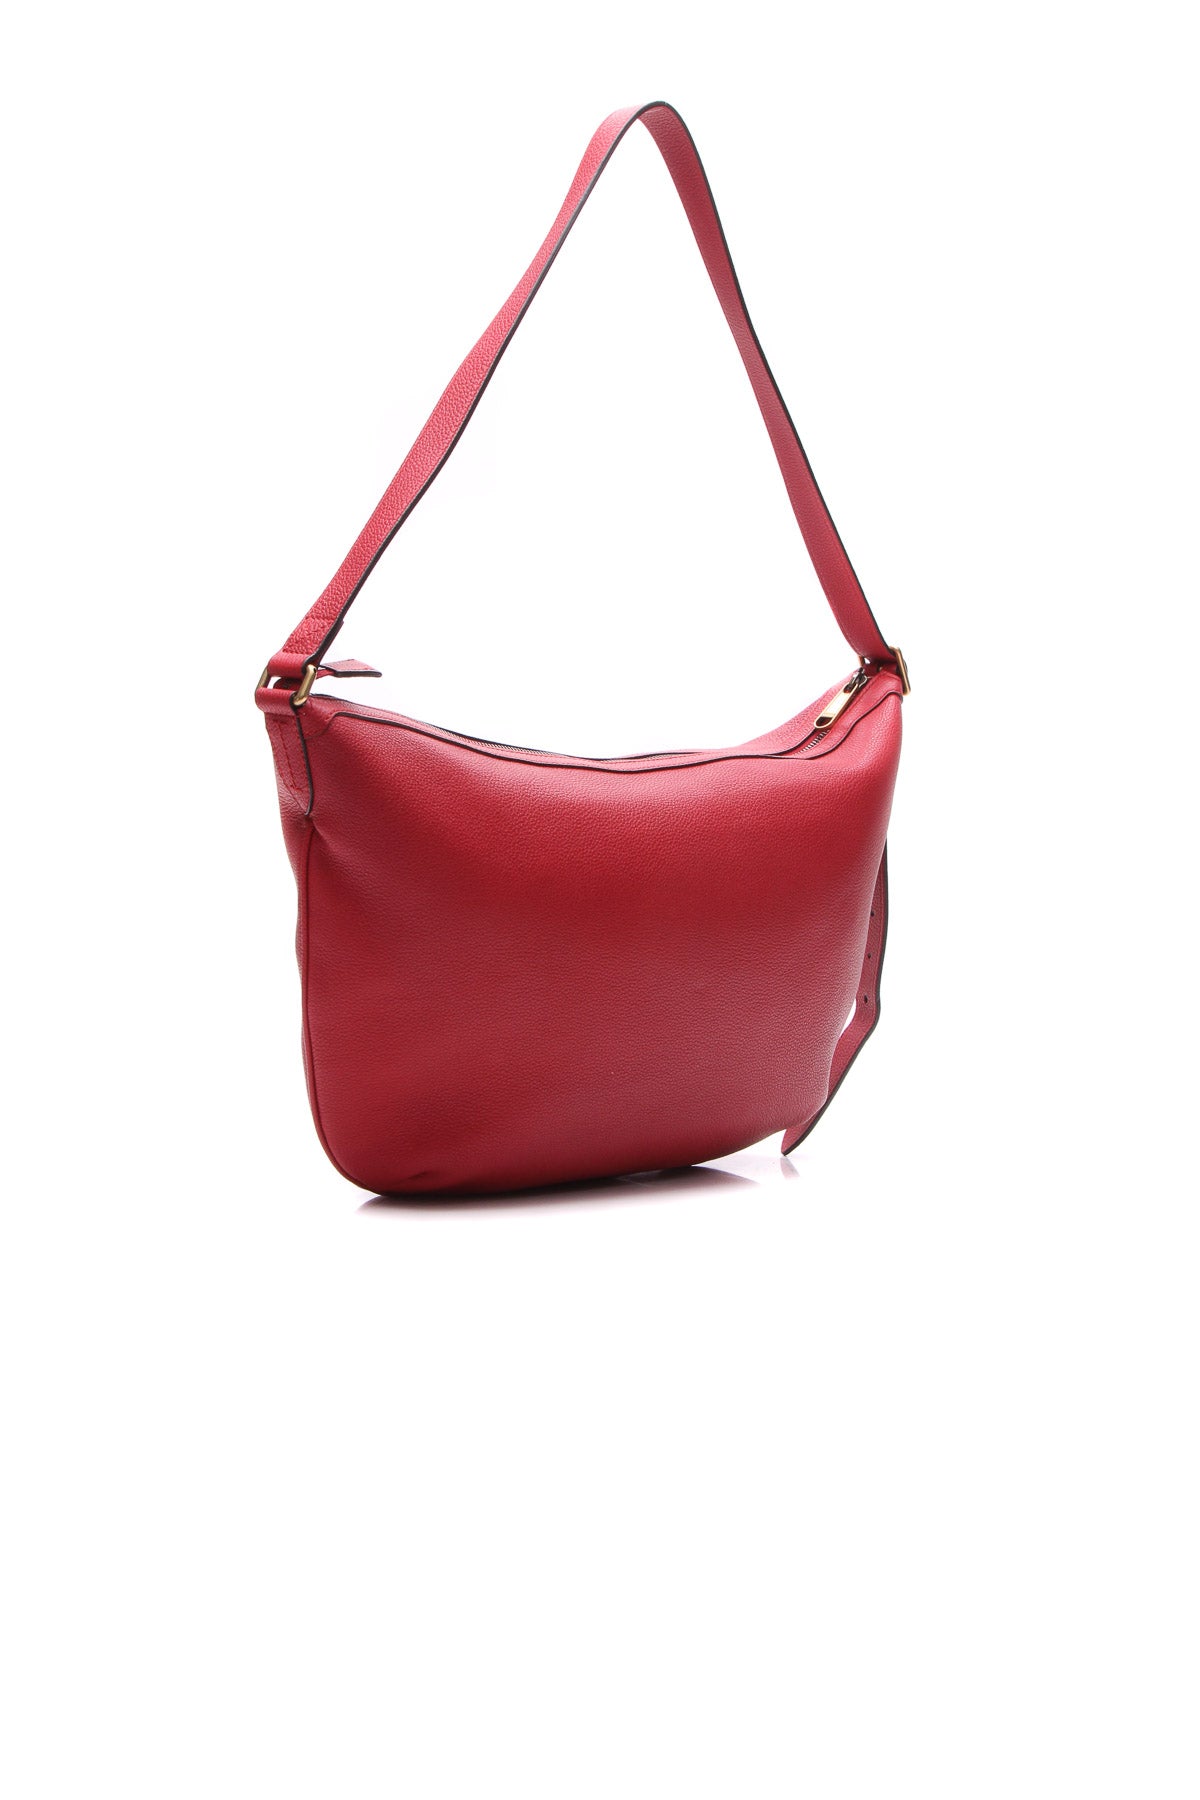 GUCCI Half Moon Logo Calfskin Leather Hobo Shoulder Bag Red 523588